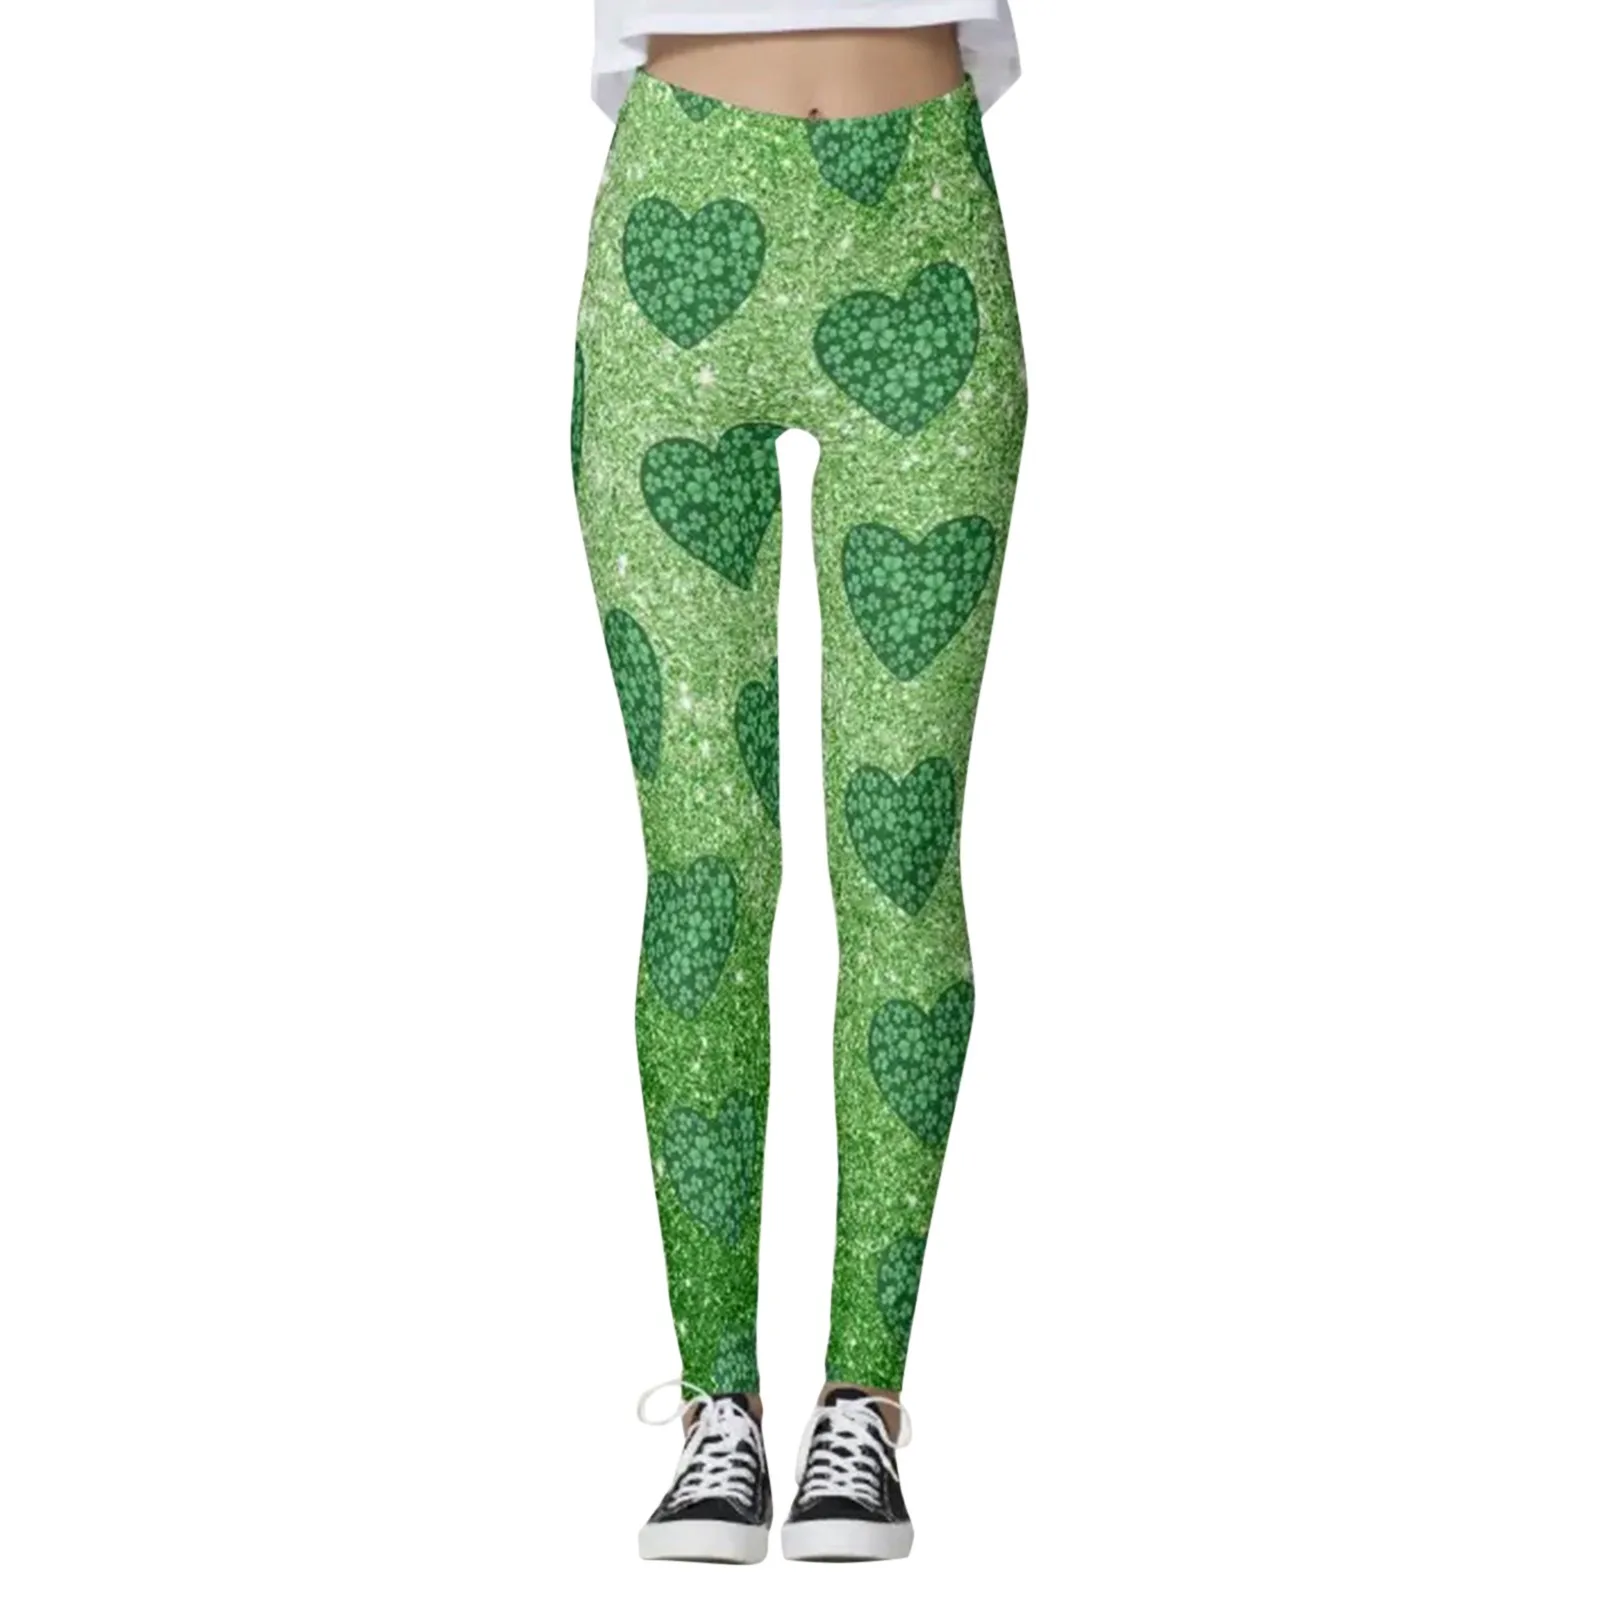 

Женские леггинсы с принтом четырехлистного клевера, зеленые брюки для занятий йогой, облегающие спортивные штаны на День Святого Патрика д...